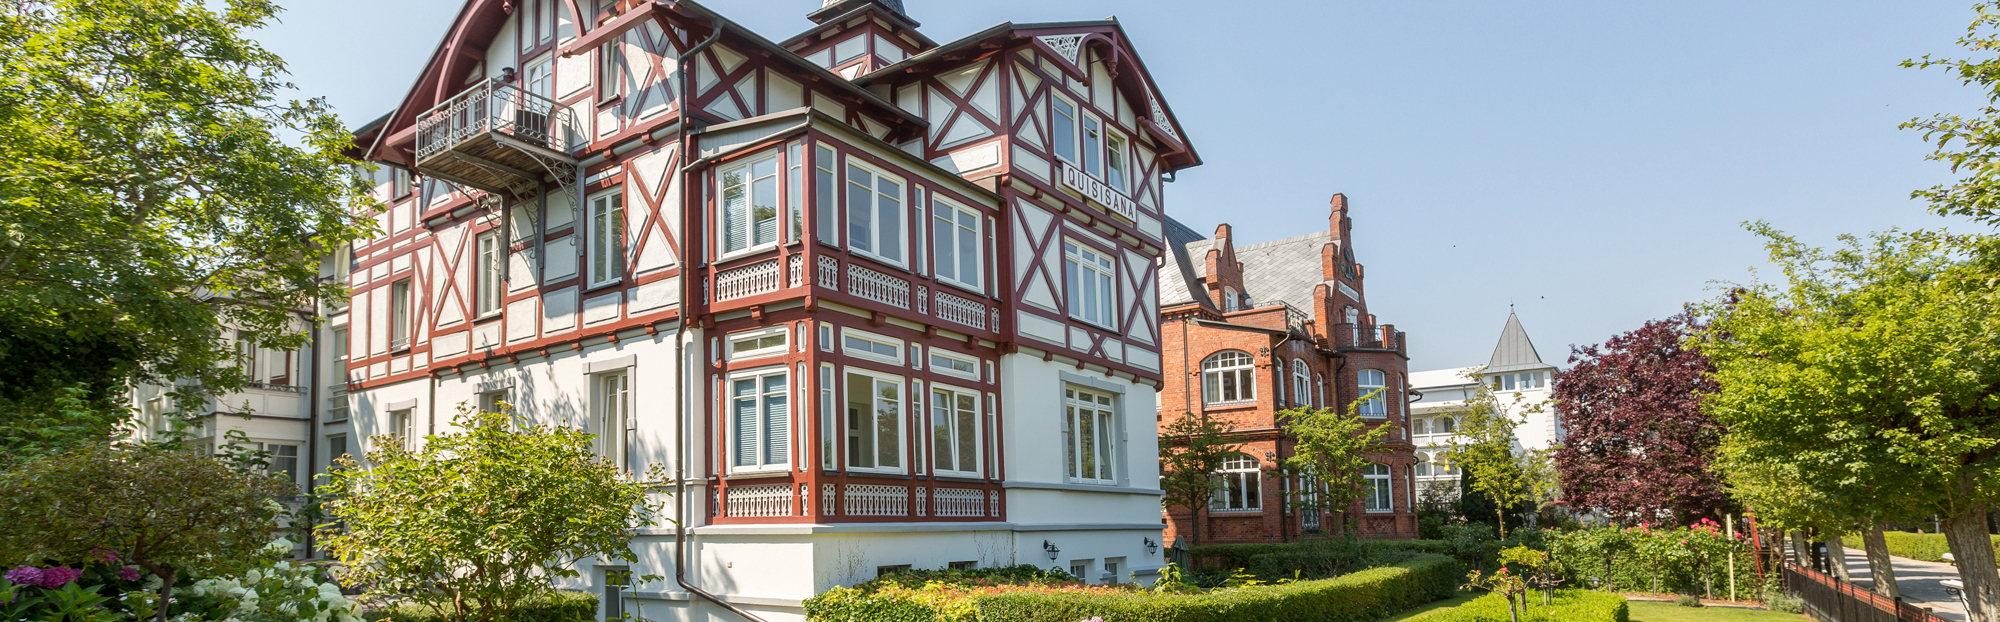 Ferienwohnungen in der Villa Quisisana ini Binz auf der Insel Rügen